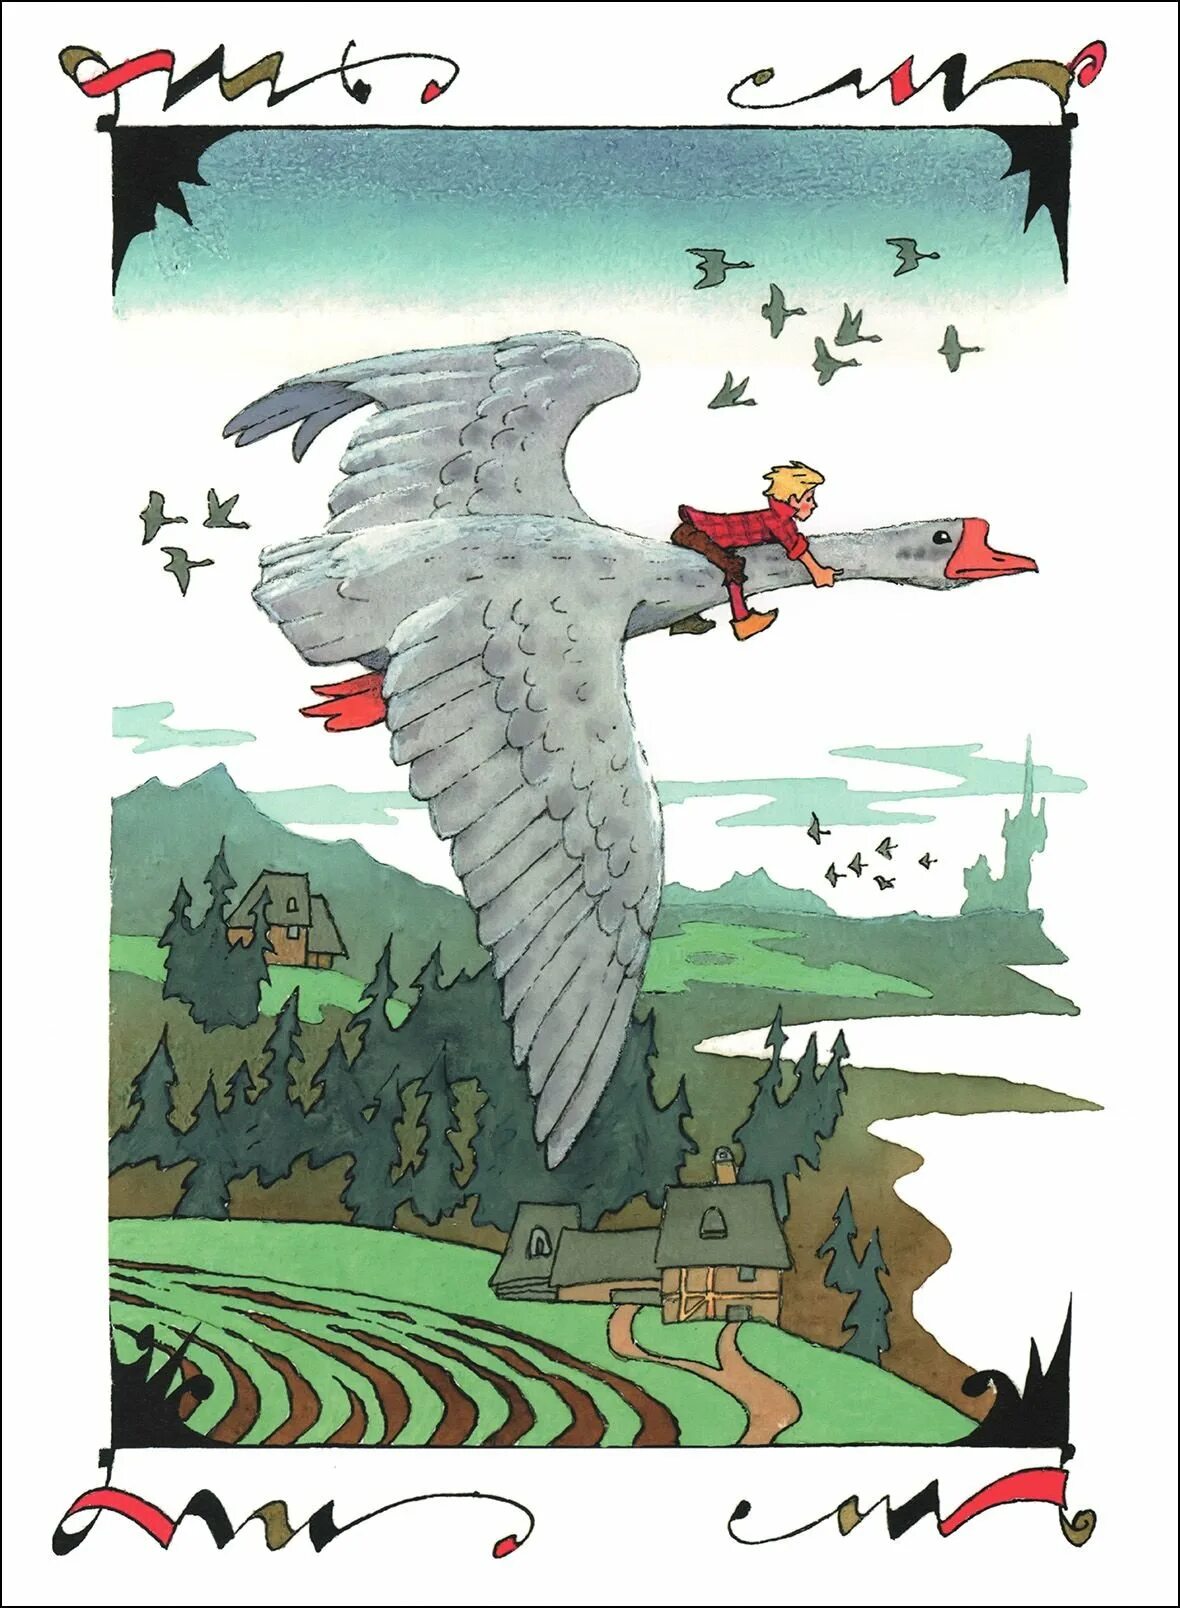 Иллюстрации Лагерлеф сказочное путешествие Нильса с дикими гусями. С.лагерлёф чудесное путешествие Нильса с дикими гусями иллюстрации. Путешествовал на гусе